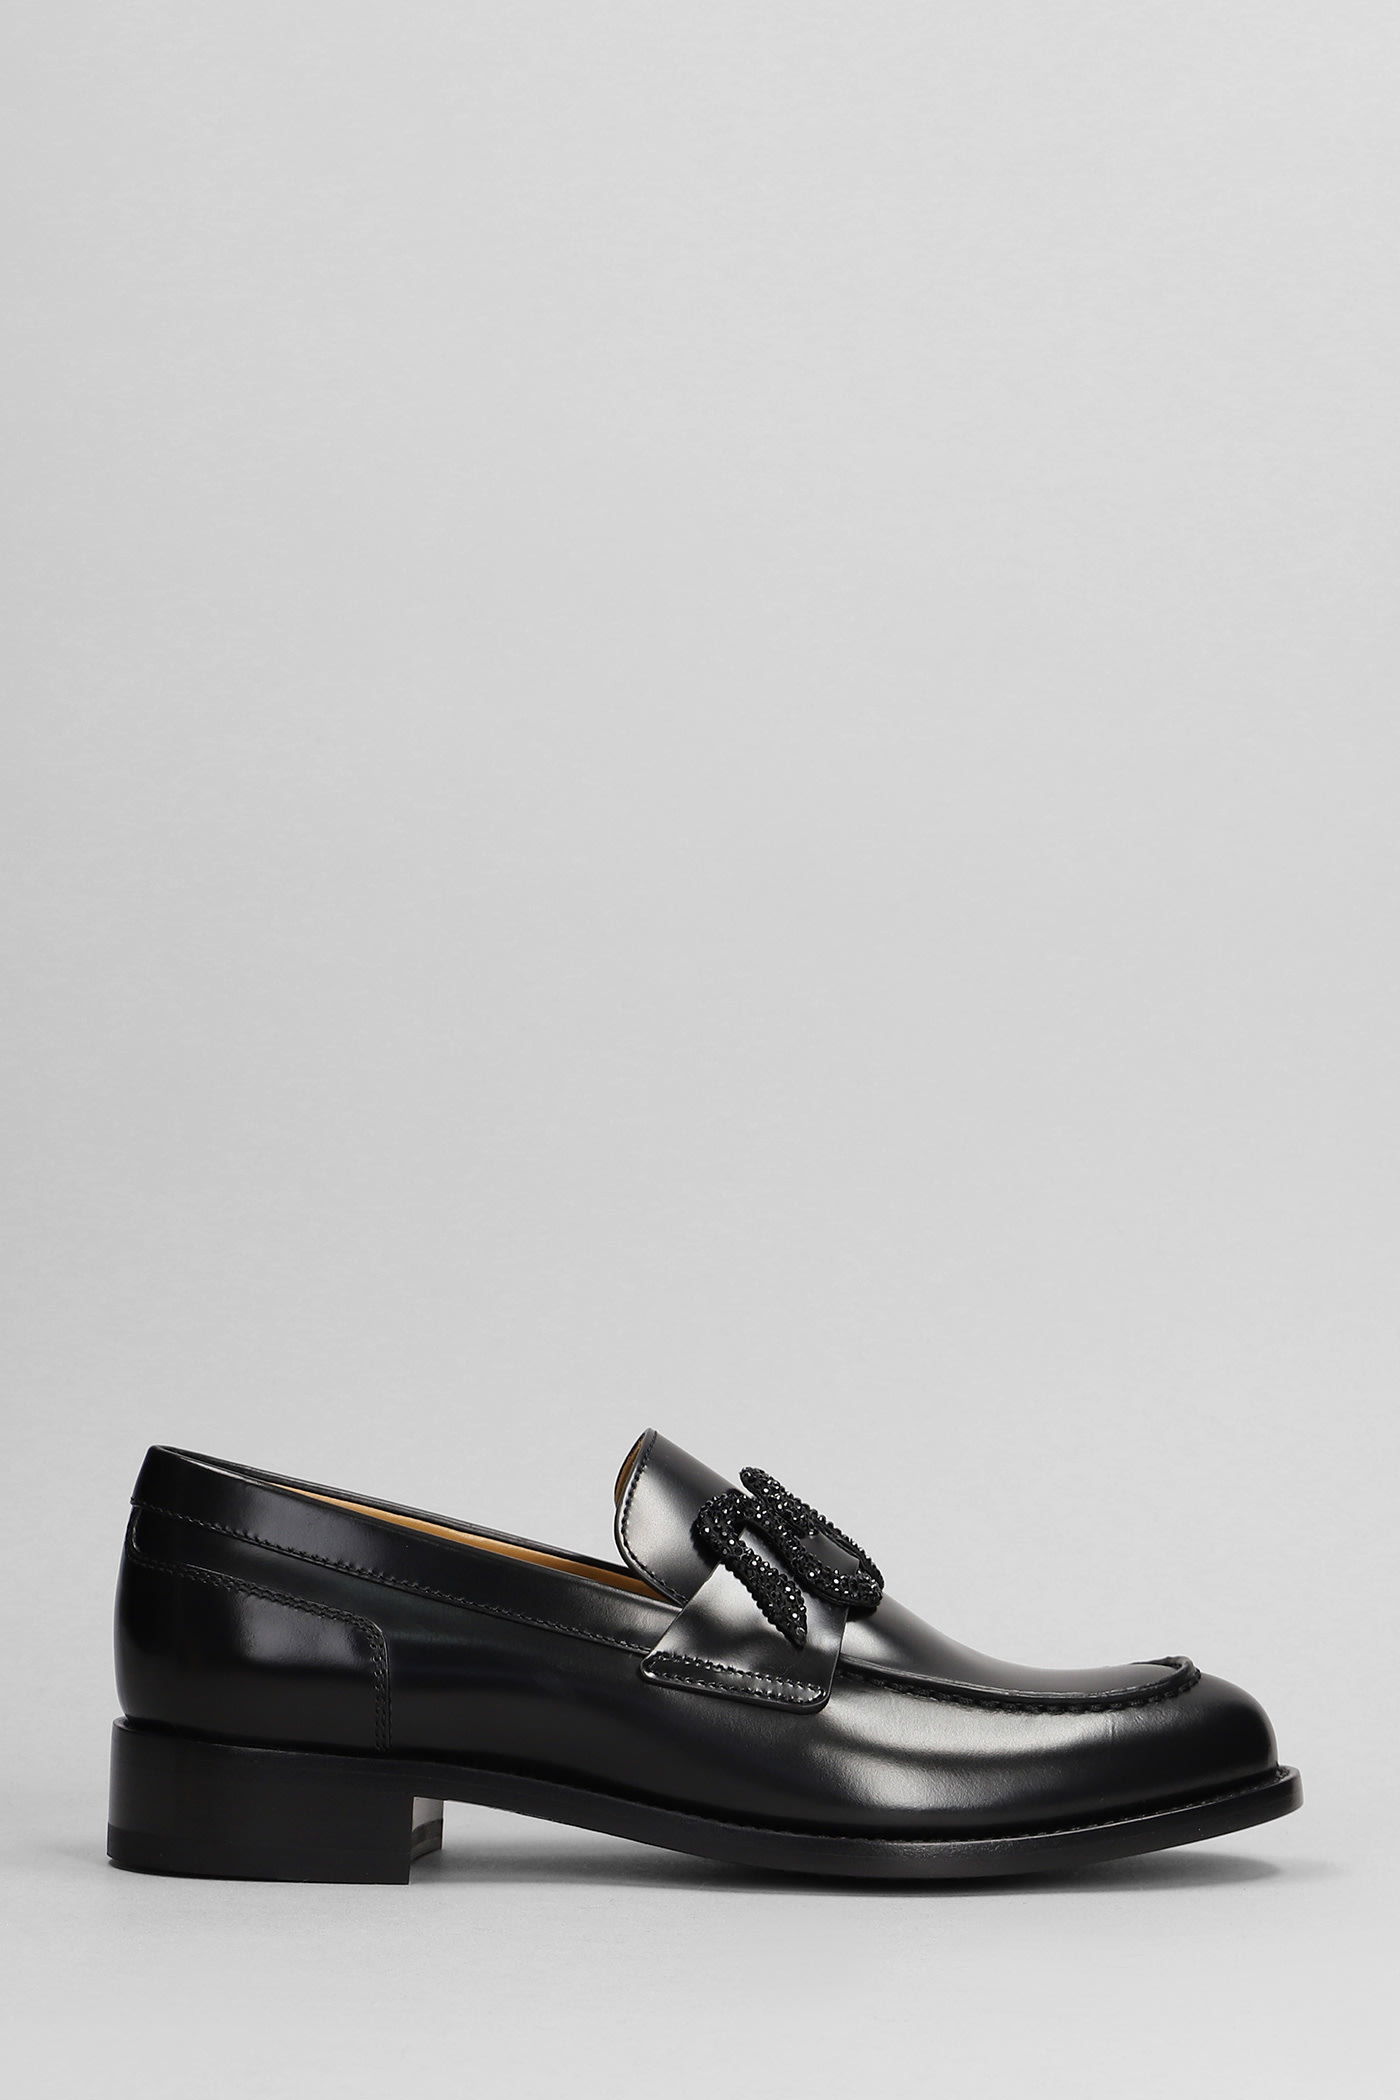 René Caovilla Morgana Loafers In Black Leather